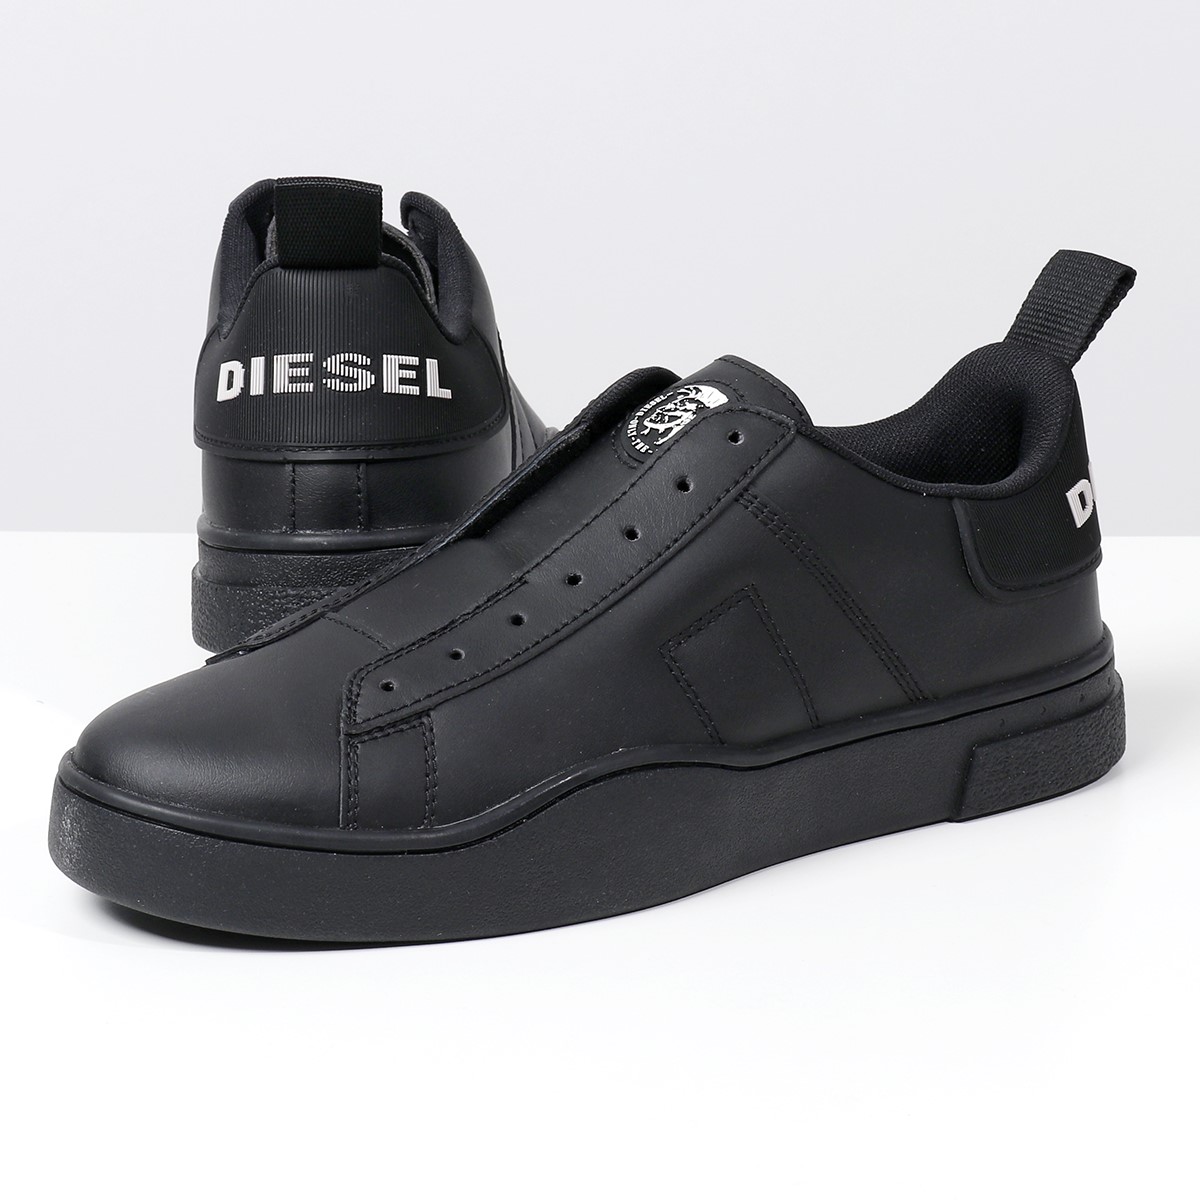 楽天市場 Diesel ディーゼル Y P3413 S Clever So スニーカー スリッポン シューズ レザー ローカット H1669 Black Black 靴 メンズ インポートセレクト Musee